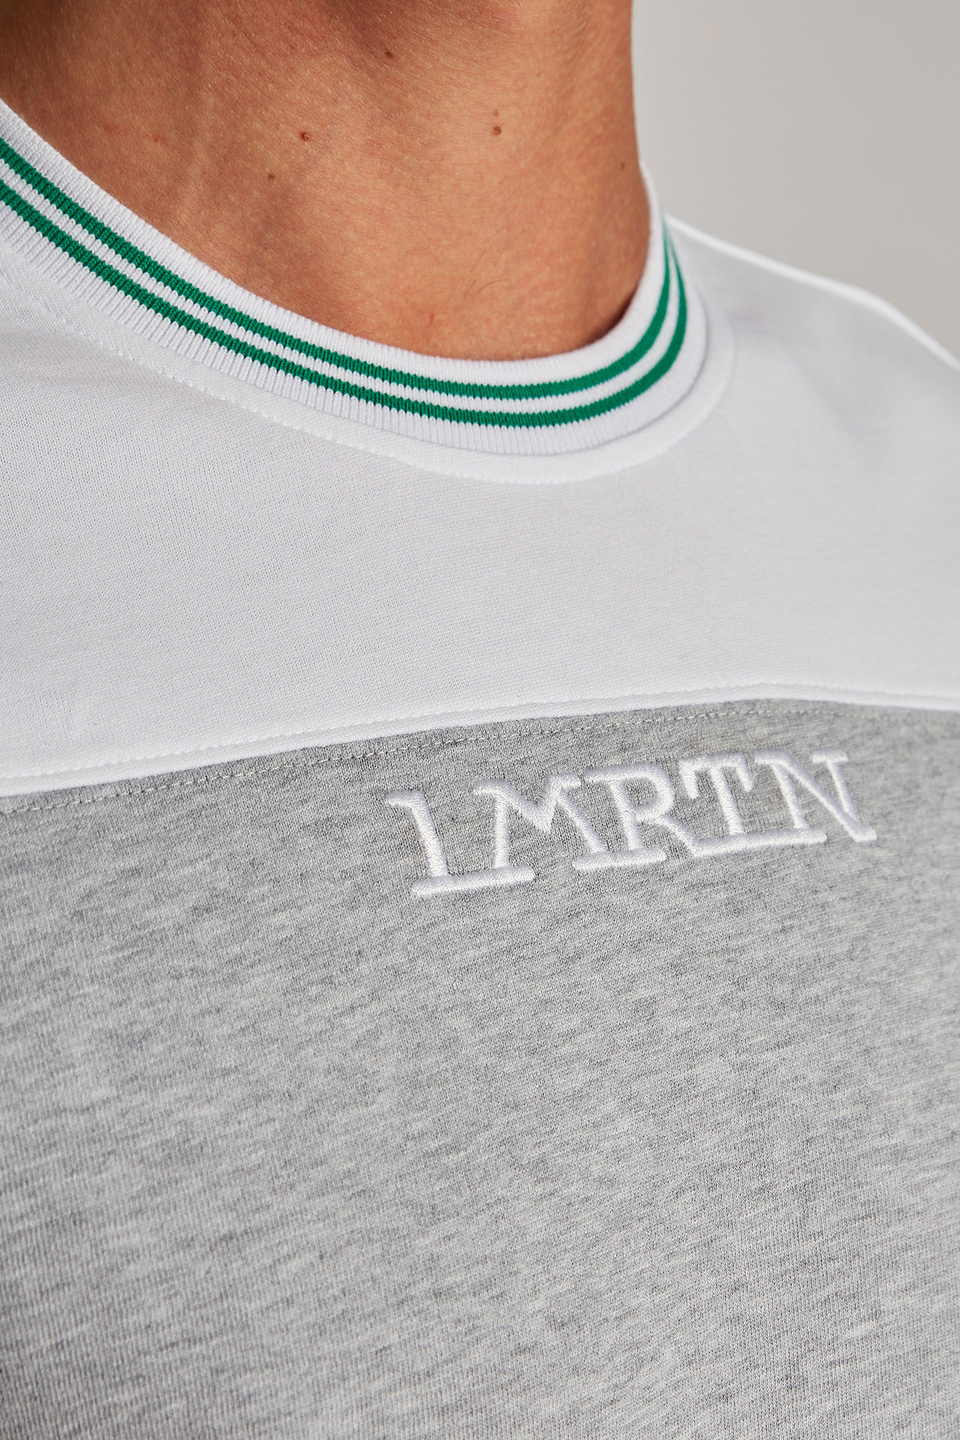 T-shirt da uomo a maniche corte con colletto a contrasto modello over - La Martina - Official Online Shop